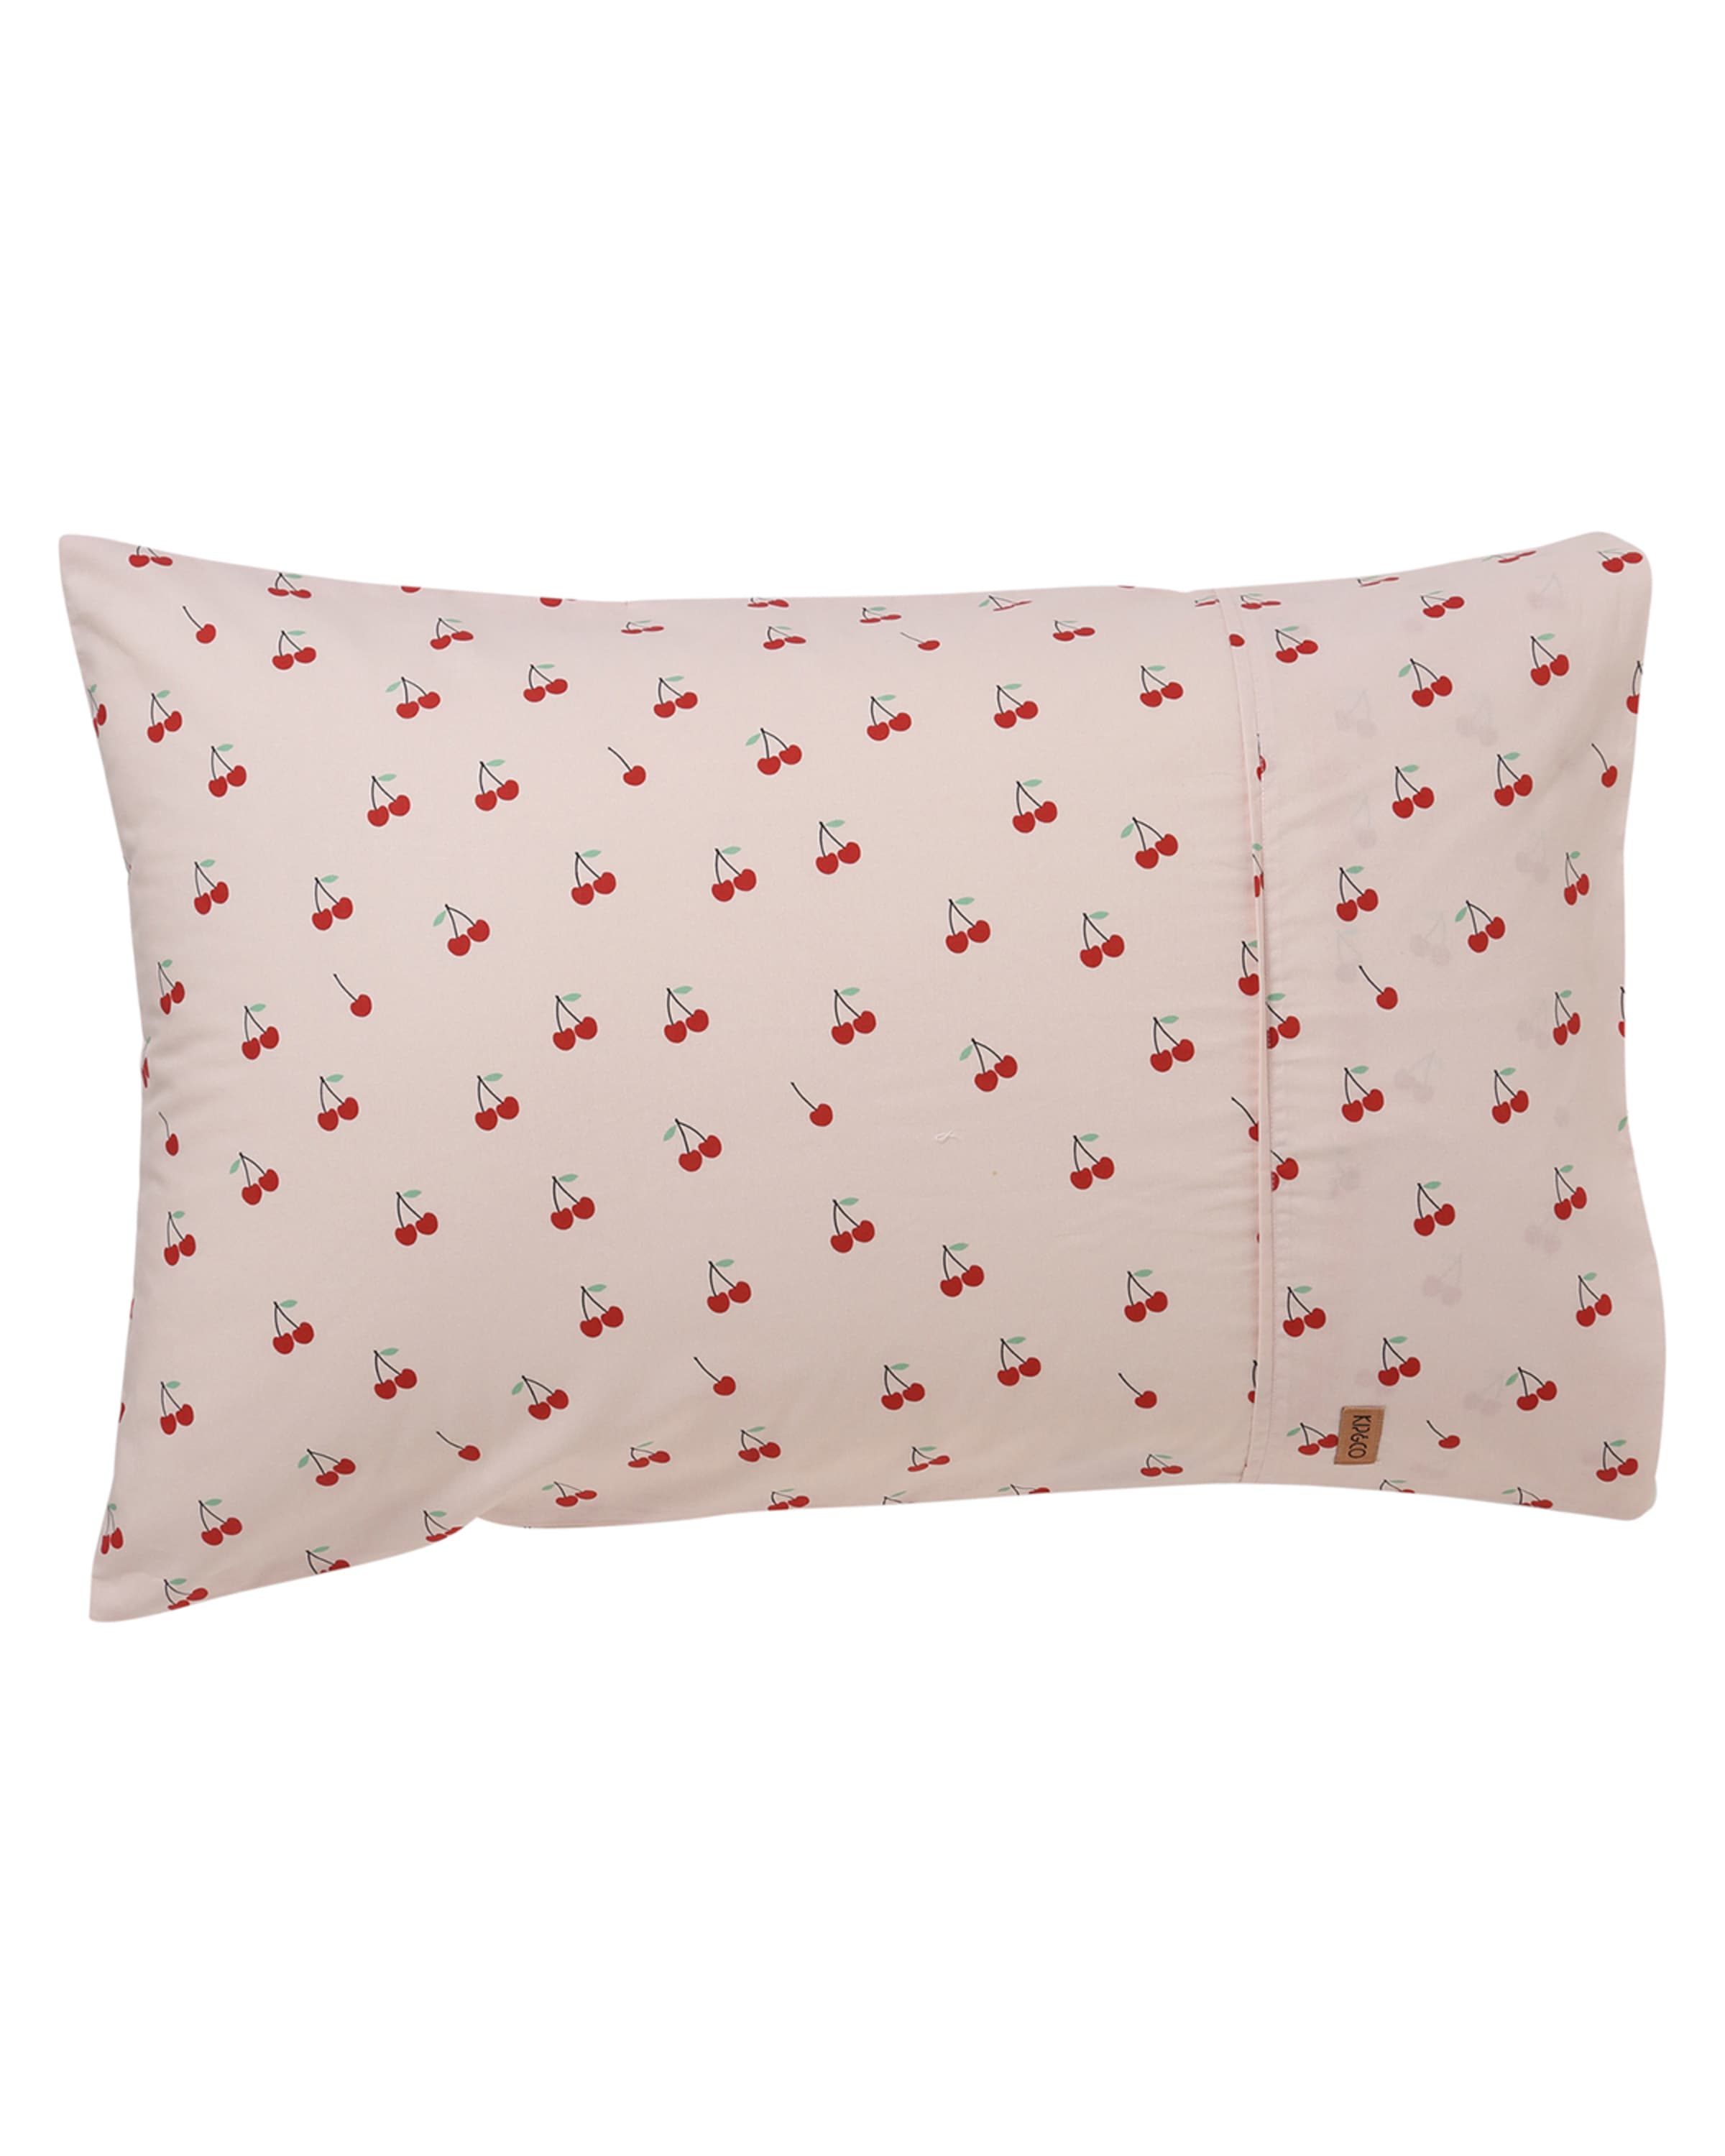 Kip&Co Kids' Mon Cherie Cotton Pillowcase - Standard, Each